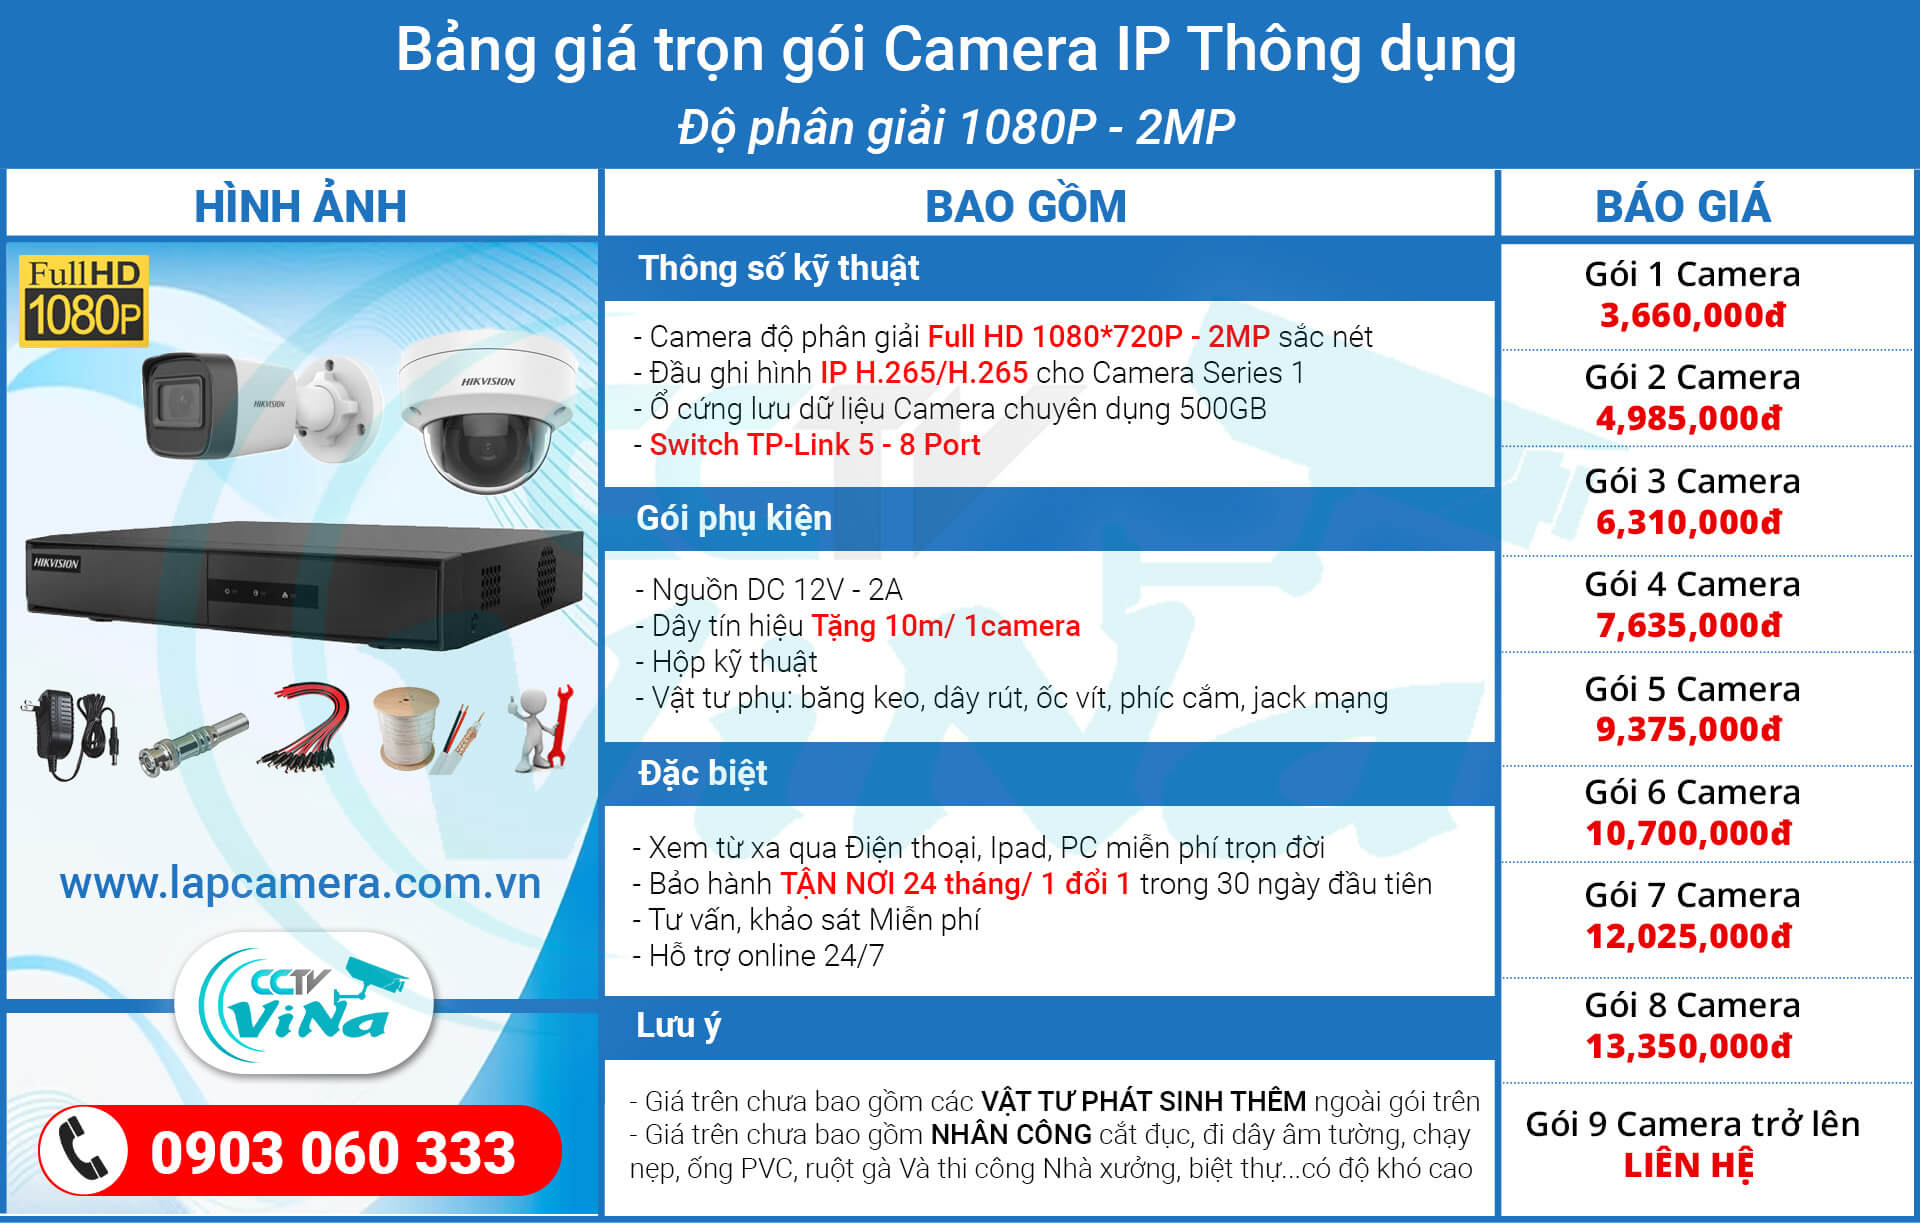 Báo giá gói camera IP - Cấp nguồn POE - Giá rẻ